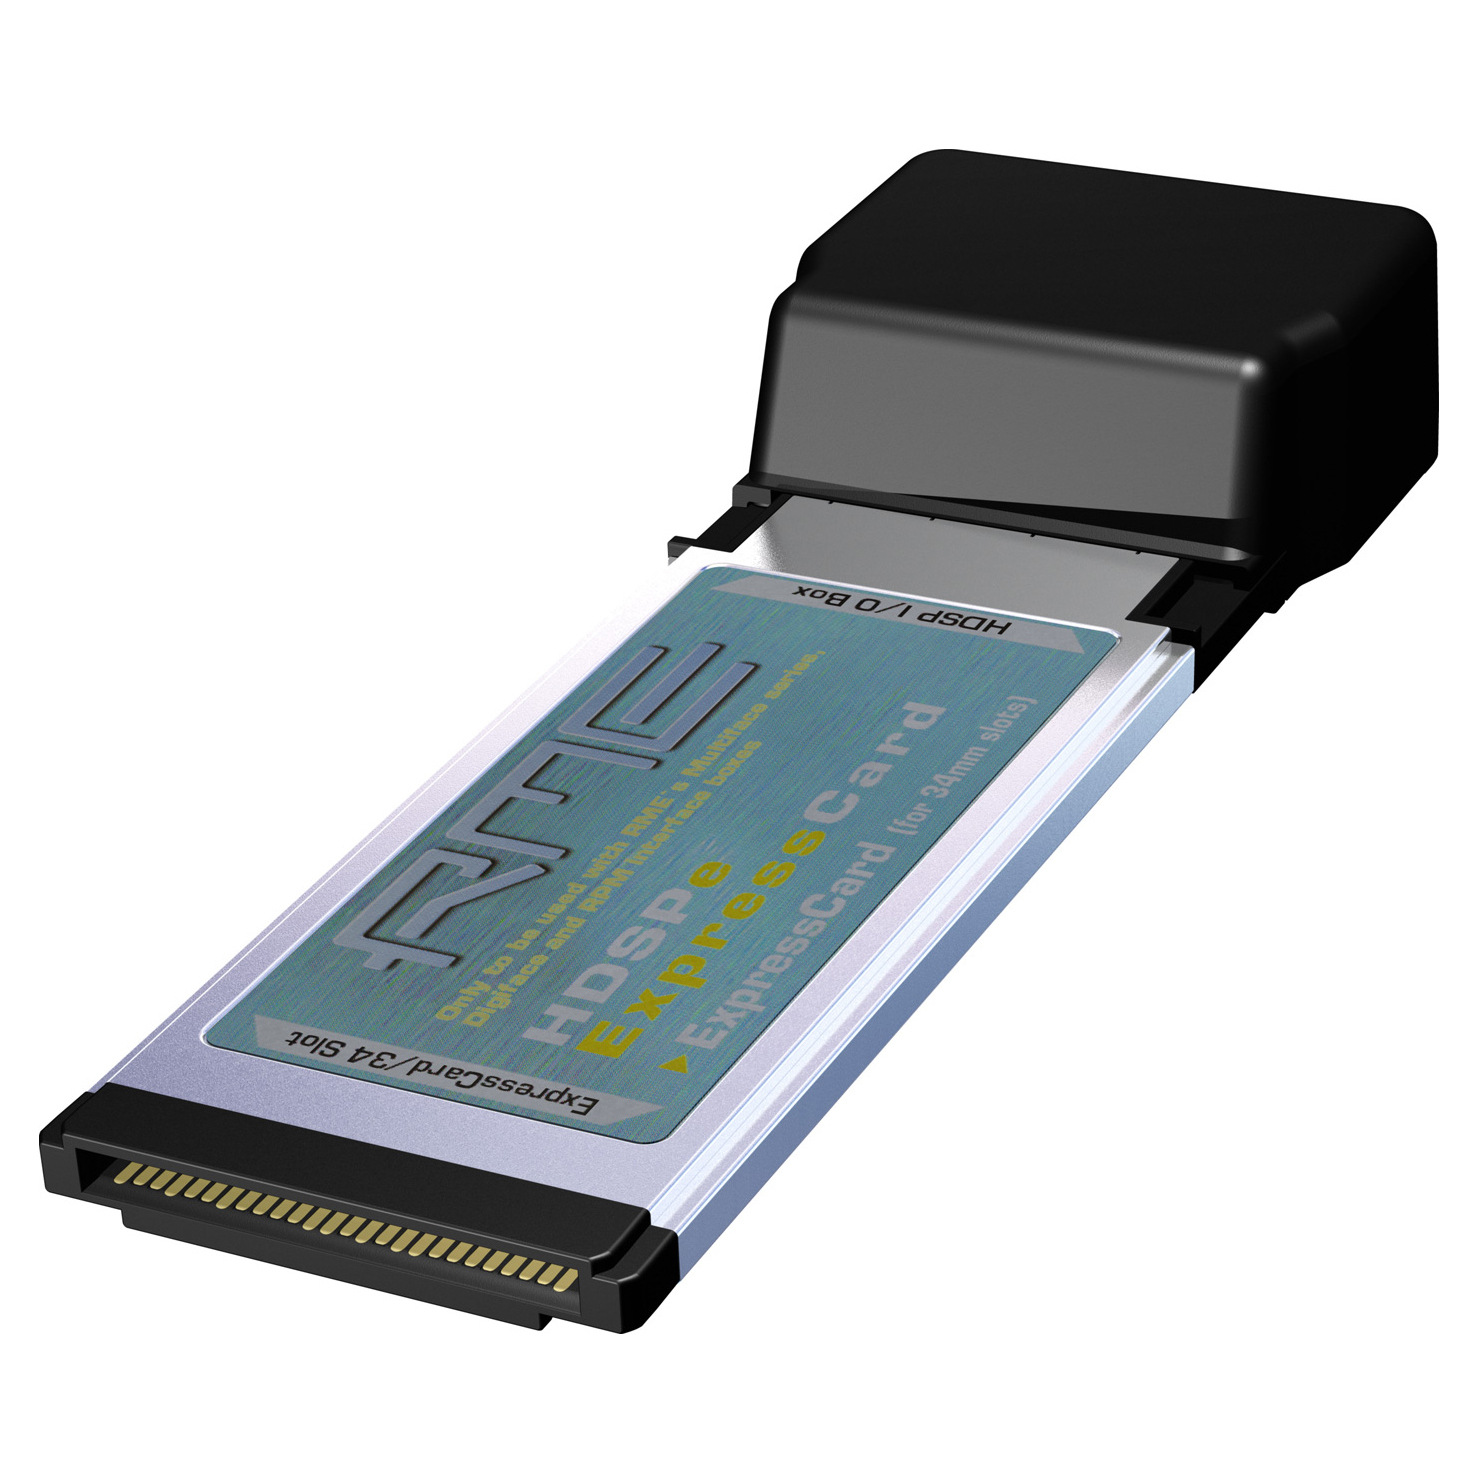 Аудиоинтерфейсы для домашней студии RME HDSPe Express Card ezcap audio capture recorder music дигитайзер с 3 5 мм и rca in порты сохранить в sd card usb disk в качестве mp3 файлов с пульта дистанционного управления ес разъем